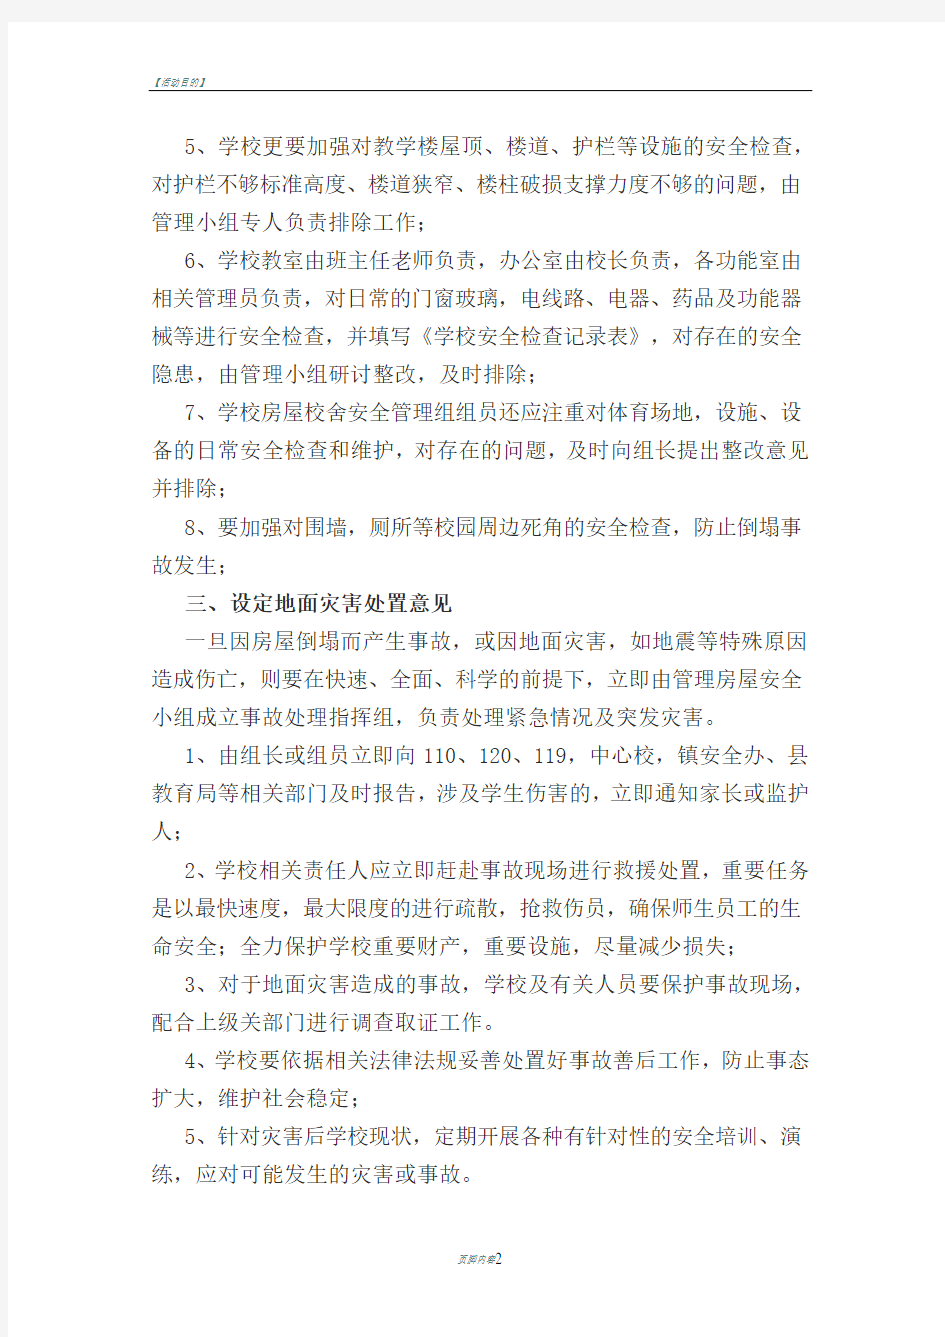 刘庄小学房屋安全管理应急预案